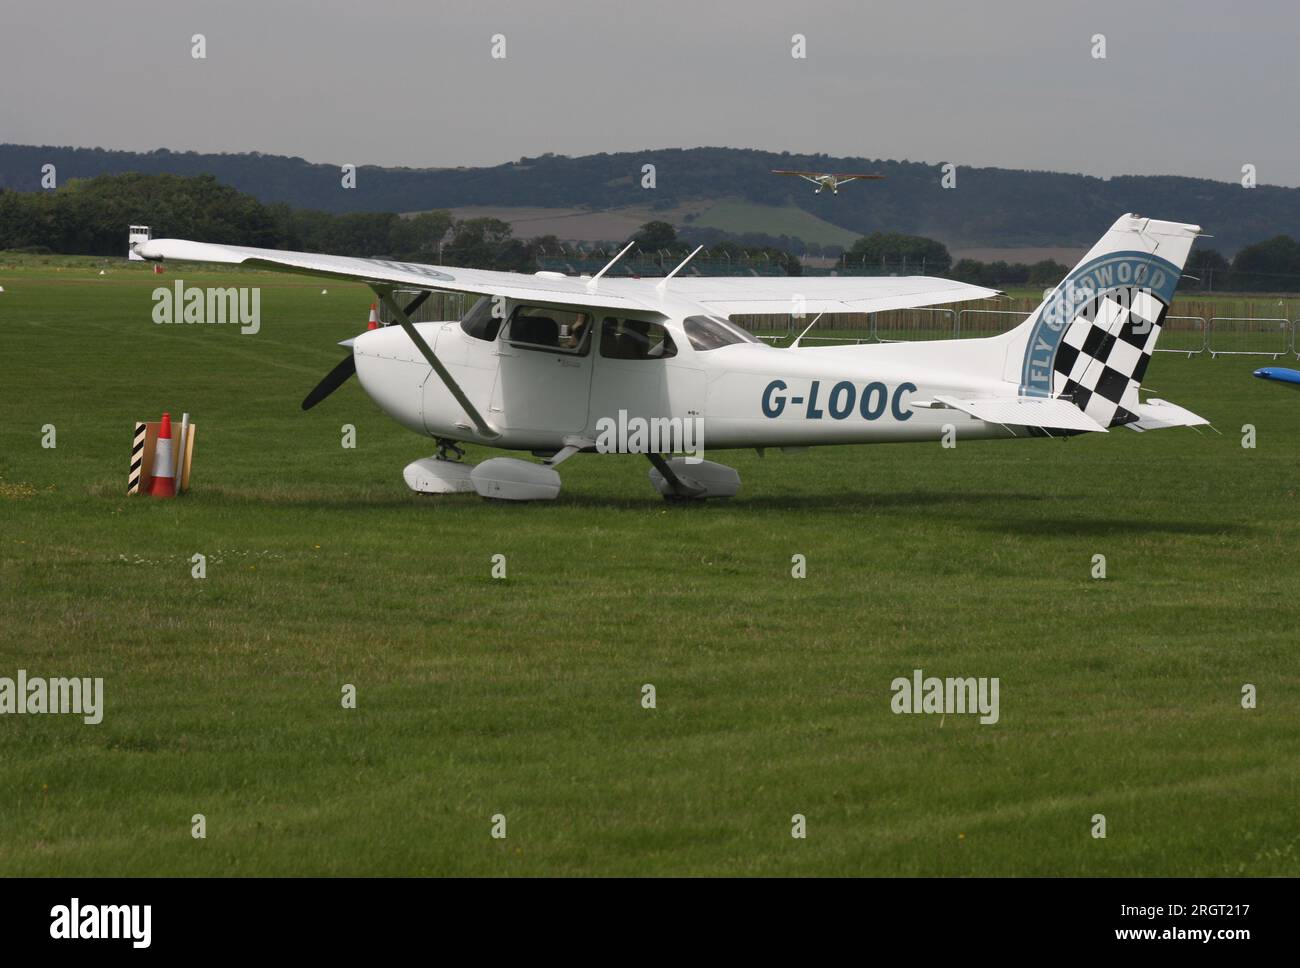 Un avion léger Cessna 172 annonçant l'aérodrome Goodwood West Sussex, vu ici à cet aérodrome Banque D'Images